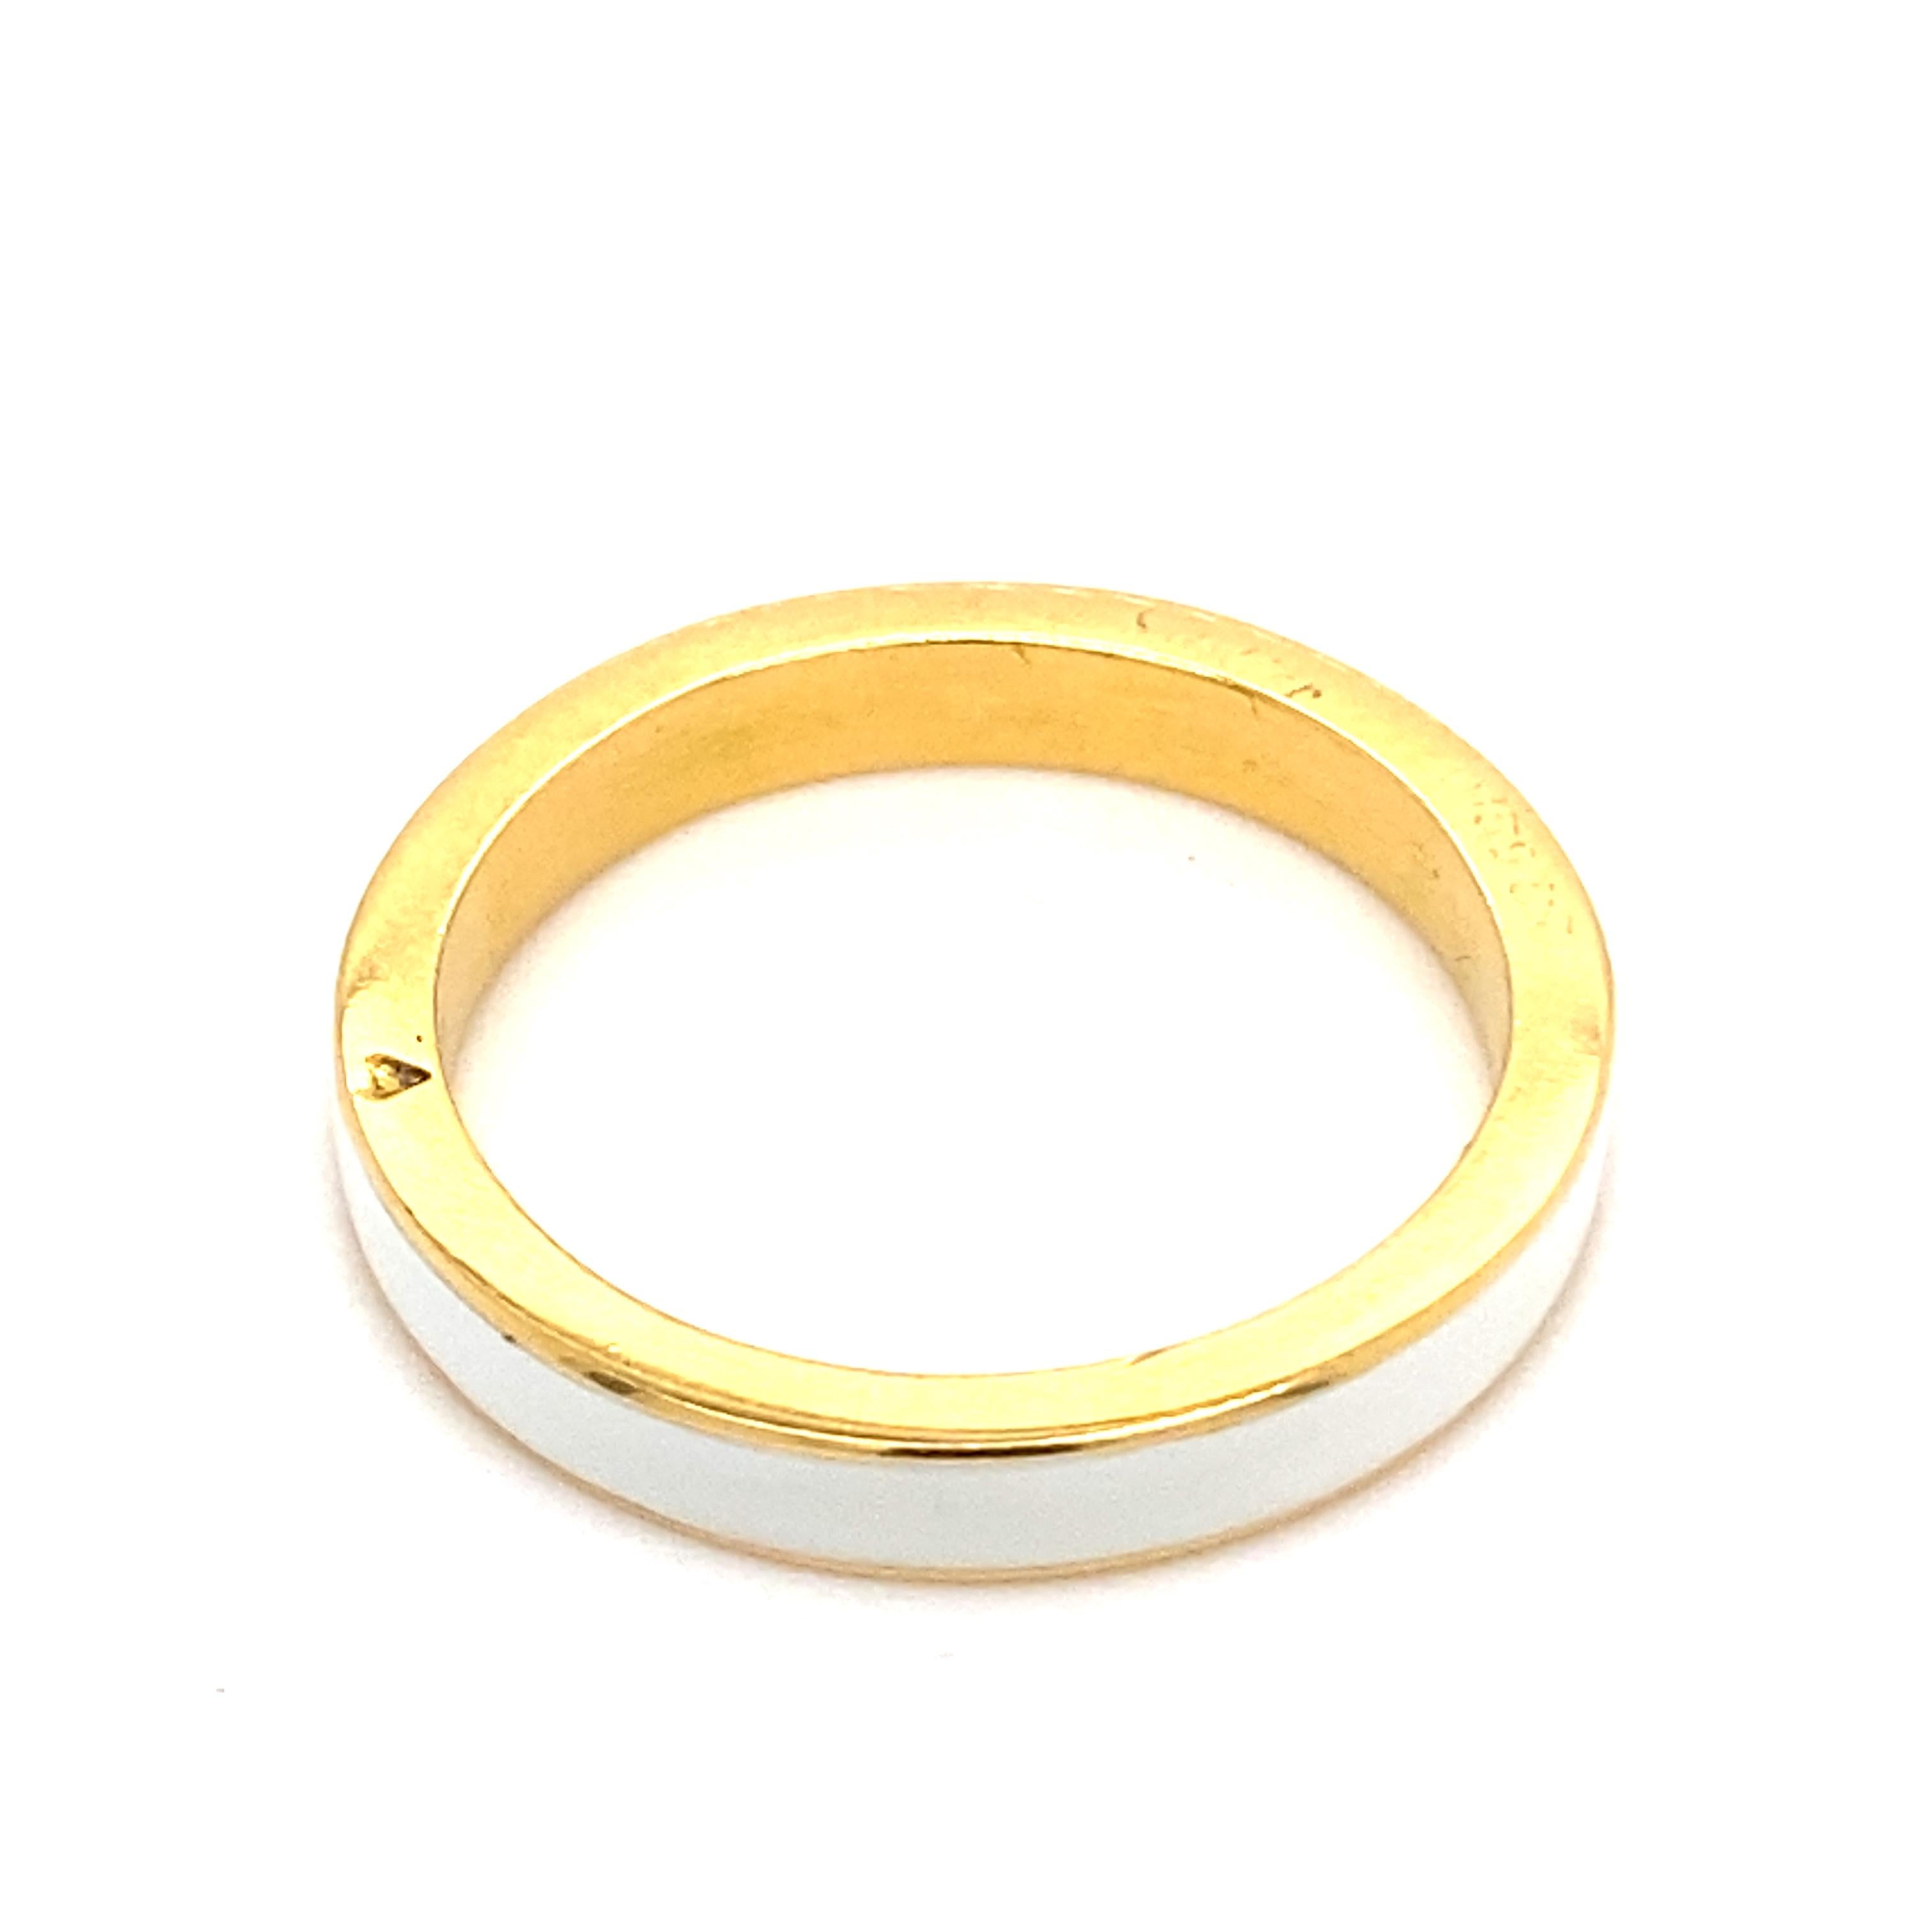 Bracelet vintage Cartier en or jaune 18 carats et émail blanc, vers 1960.

Conçu comme un simple bracelet en or jaune 18 carats avec un anneau d'émail guilloché blanc en son centre.

Une bague magnifiquement élégante, qui peut être portée seule ou